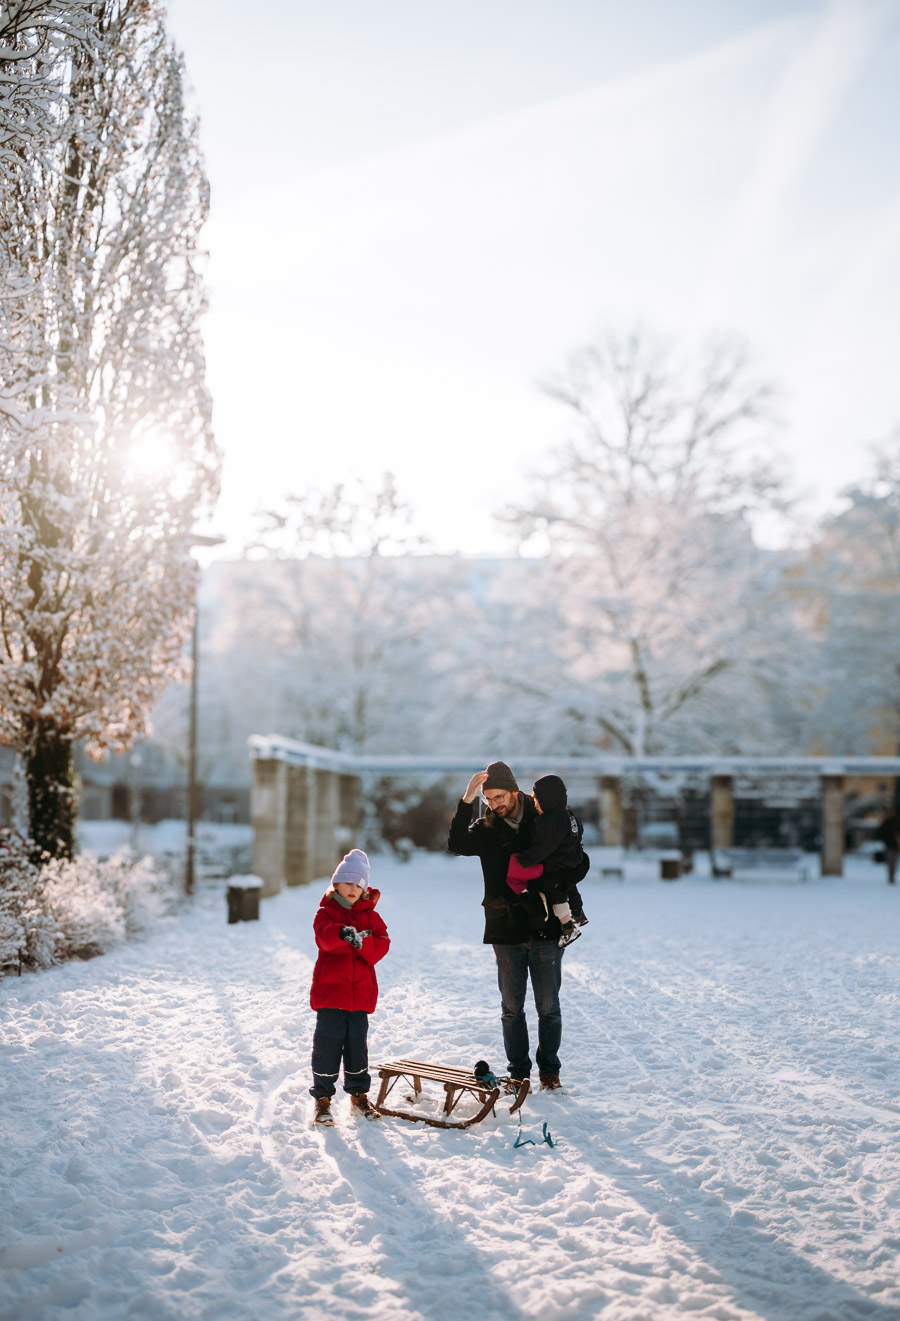 Familie im Schnee auf dem Erzbergerplatz